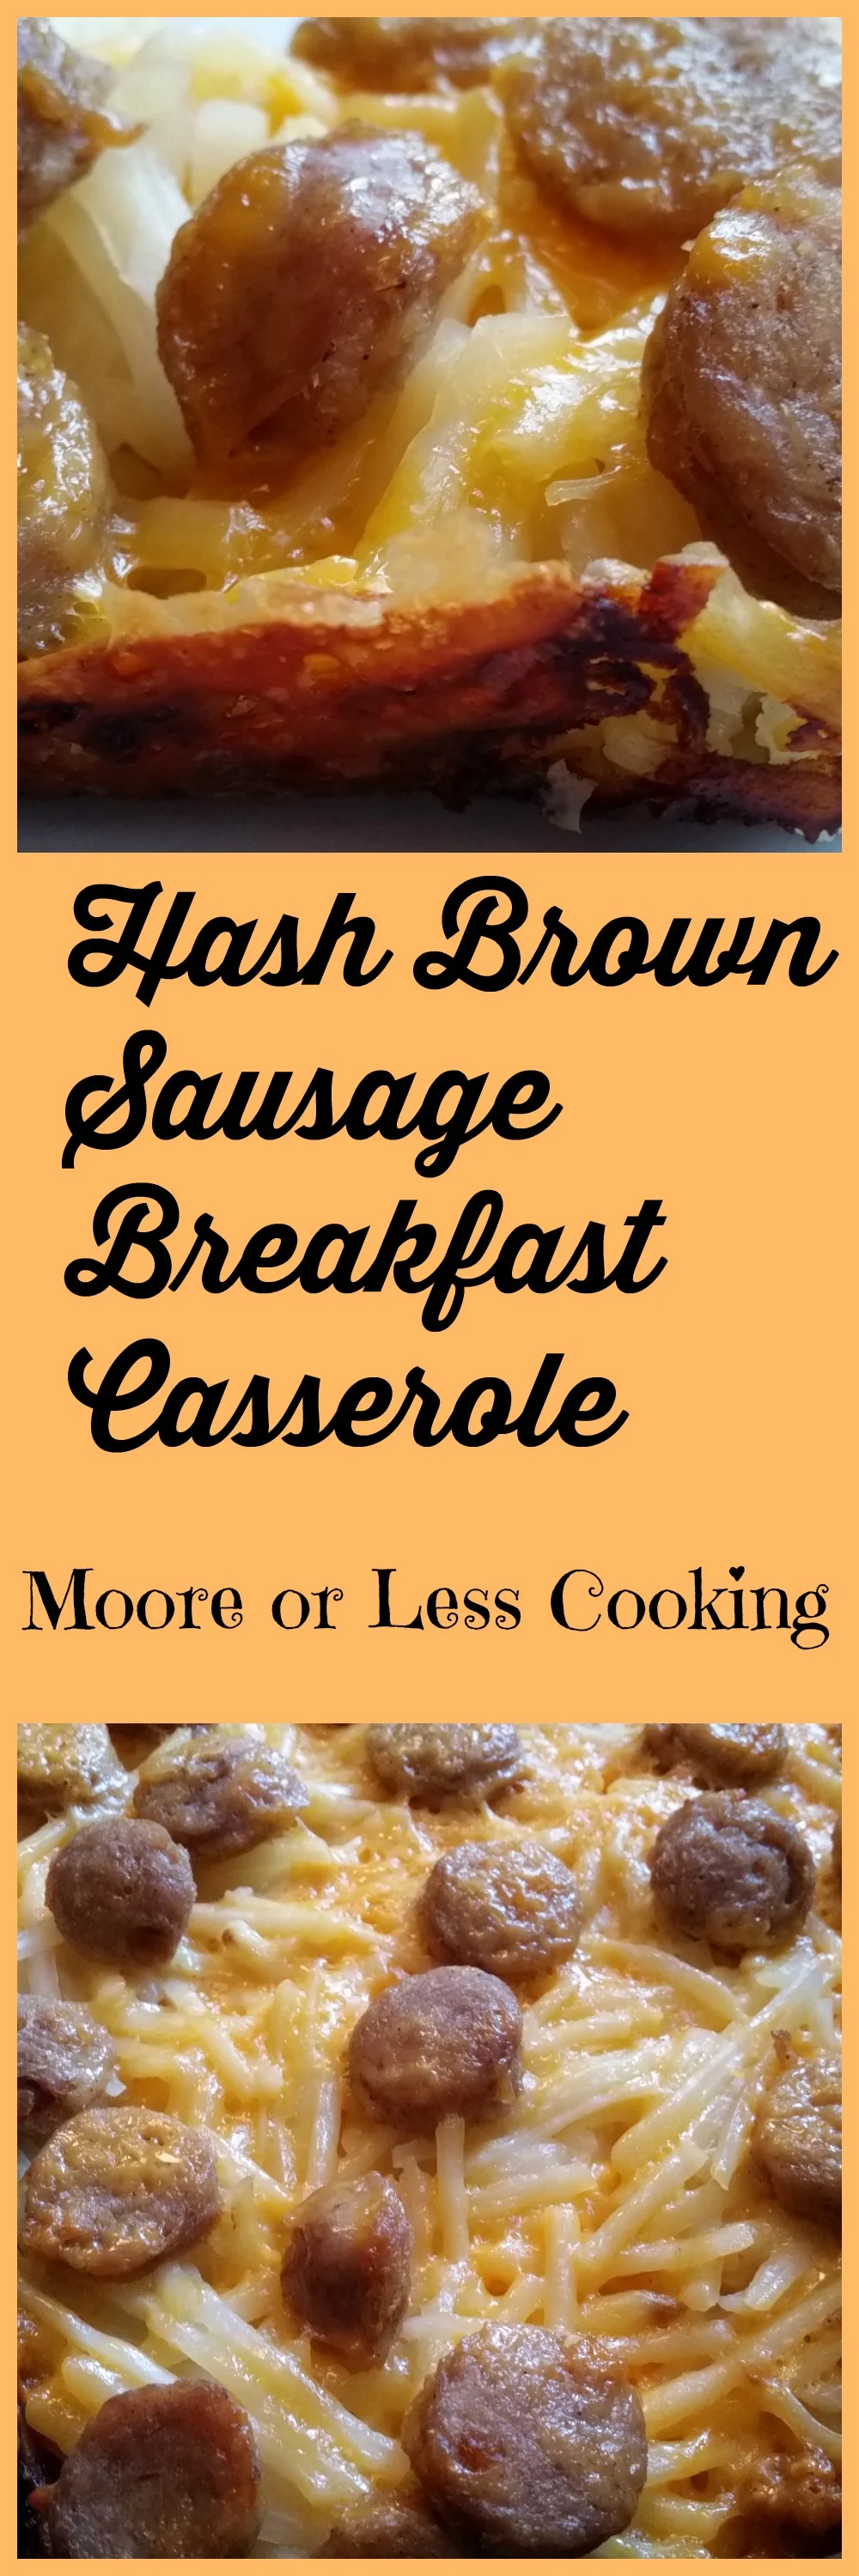 Hash Brown Sausage Breakfast Casserole